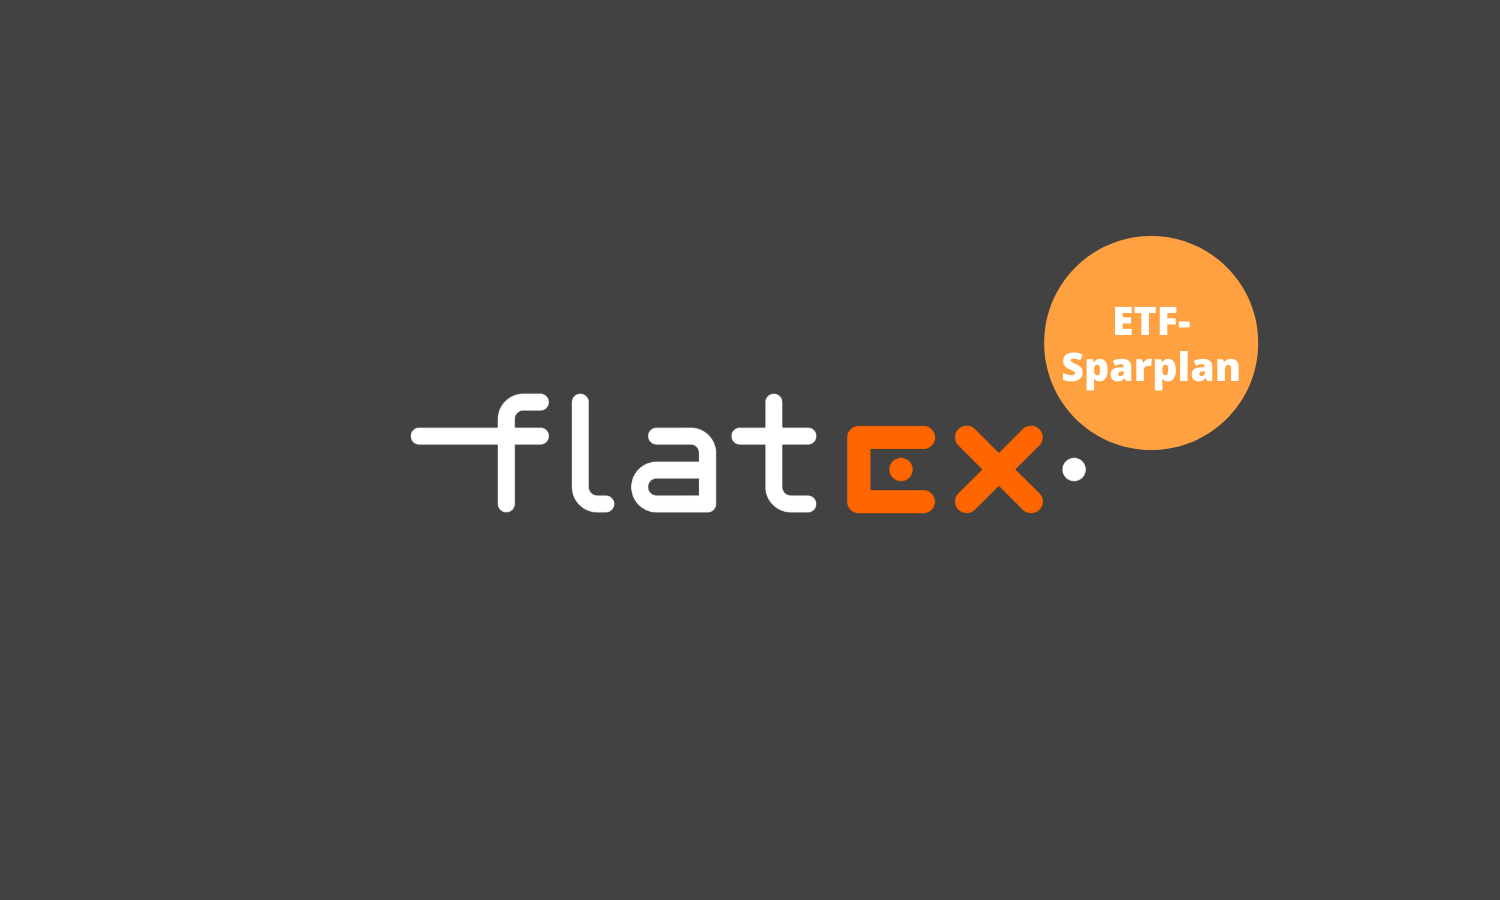 Flatex Etf Sparplan Erfahrungen Test Update 01 21